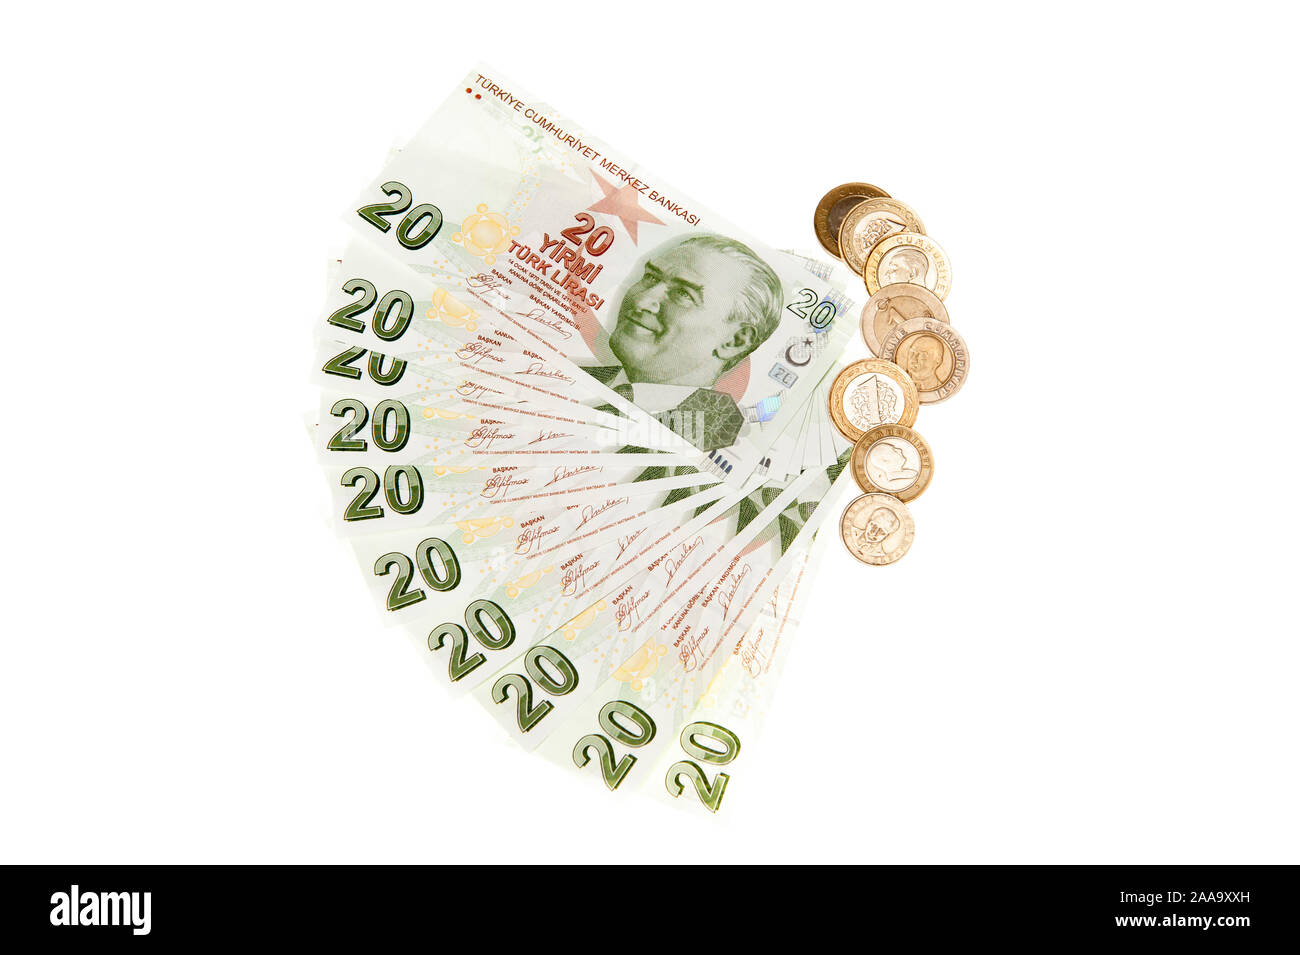 Turchia - valuta la lira turca delle banconote e delle monete metalliche in euro su sfondo bianco Foto Stock